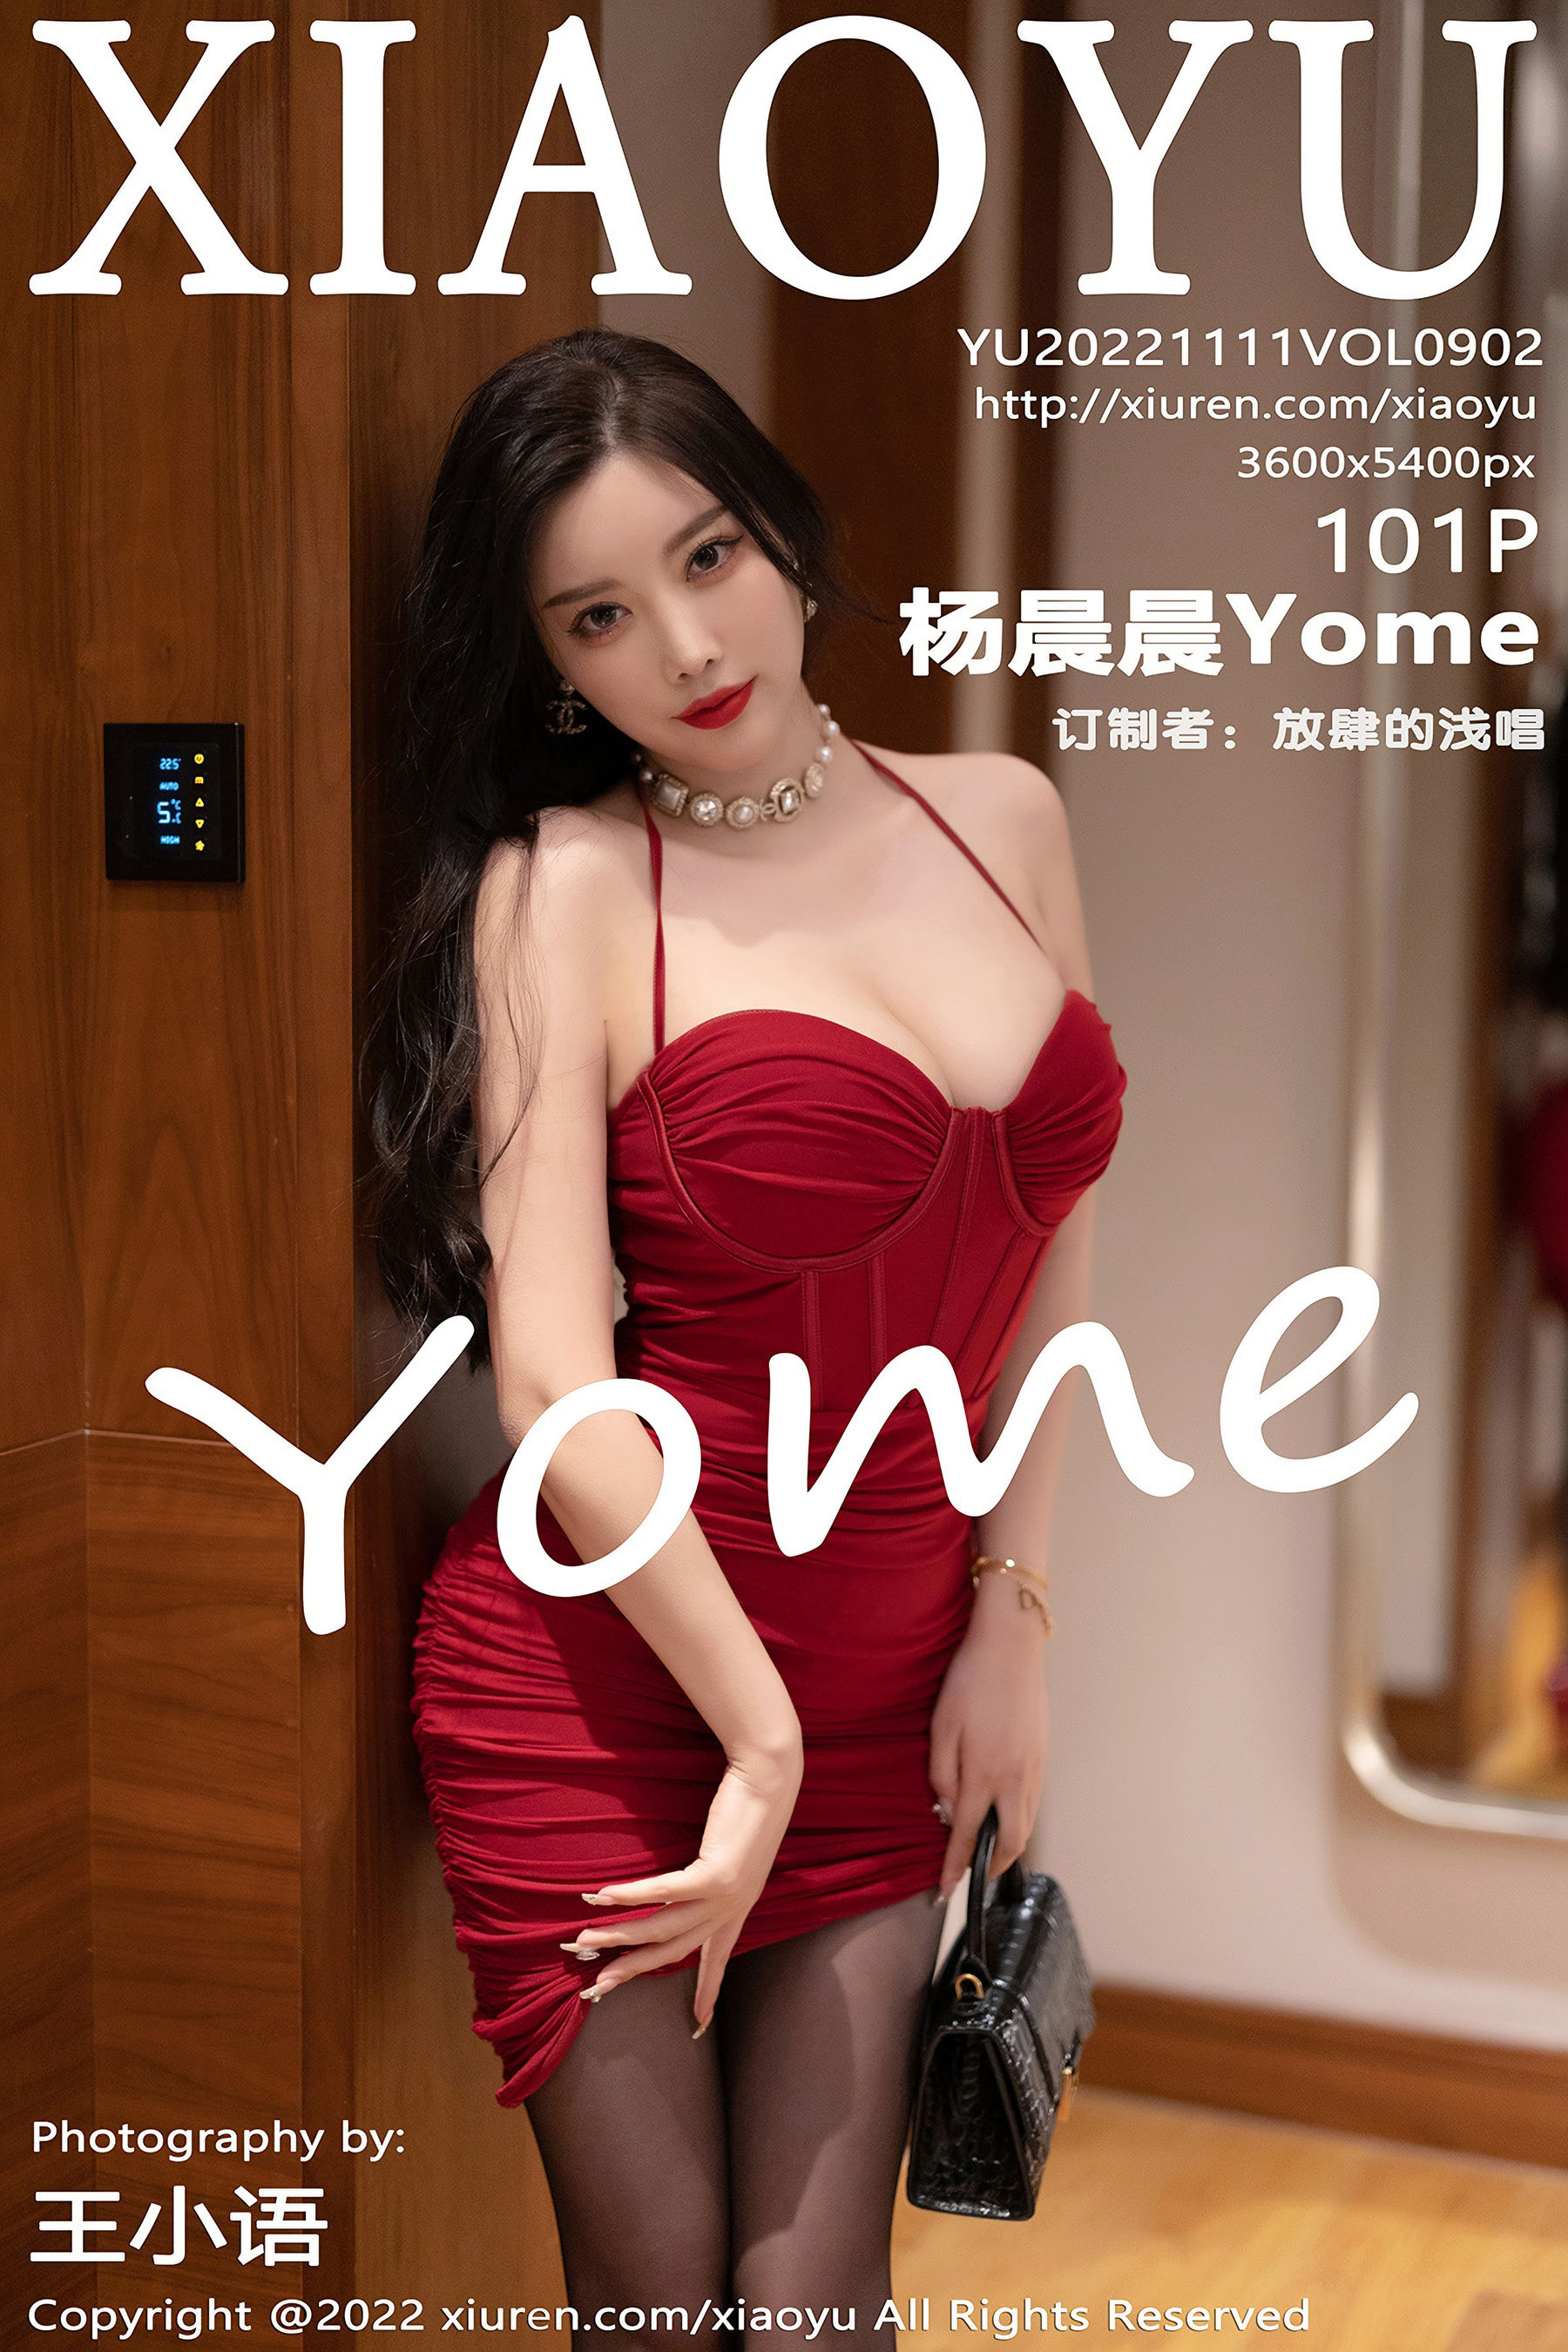 [语画界XIAOYU] Vol.902 杨晨晨Yome/(102P)